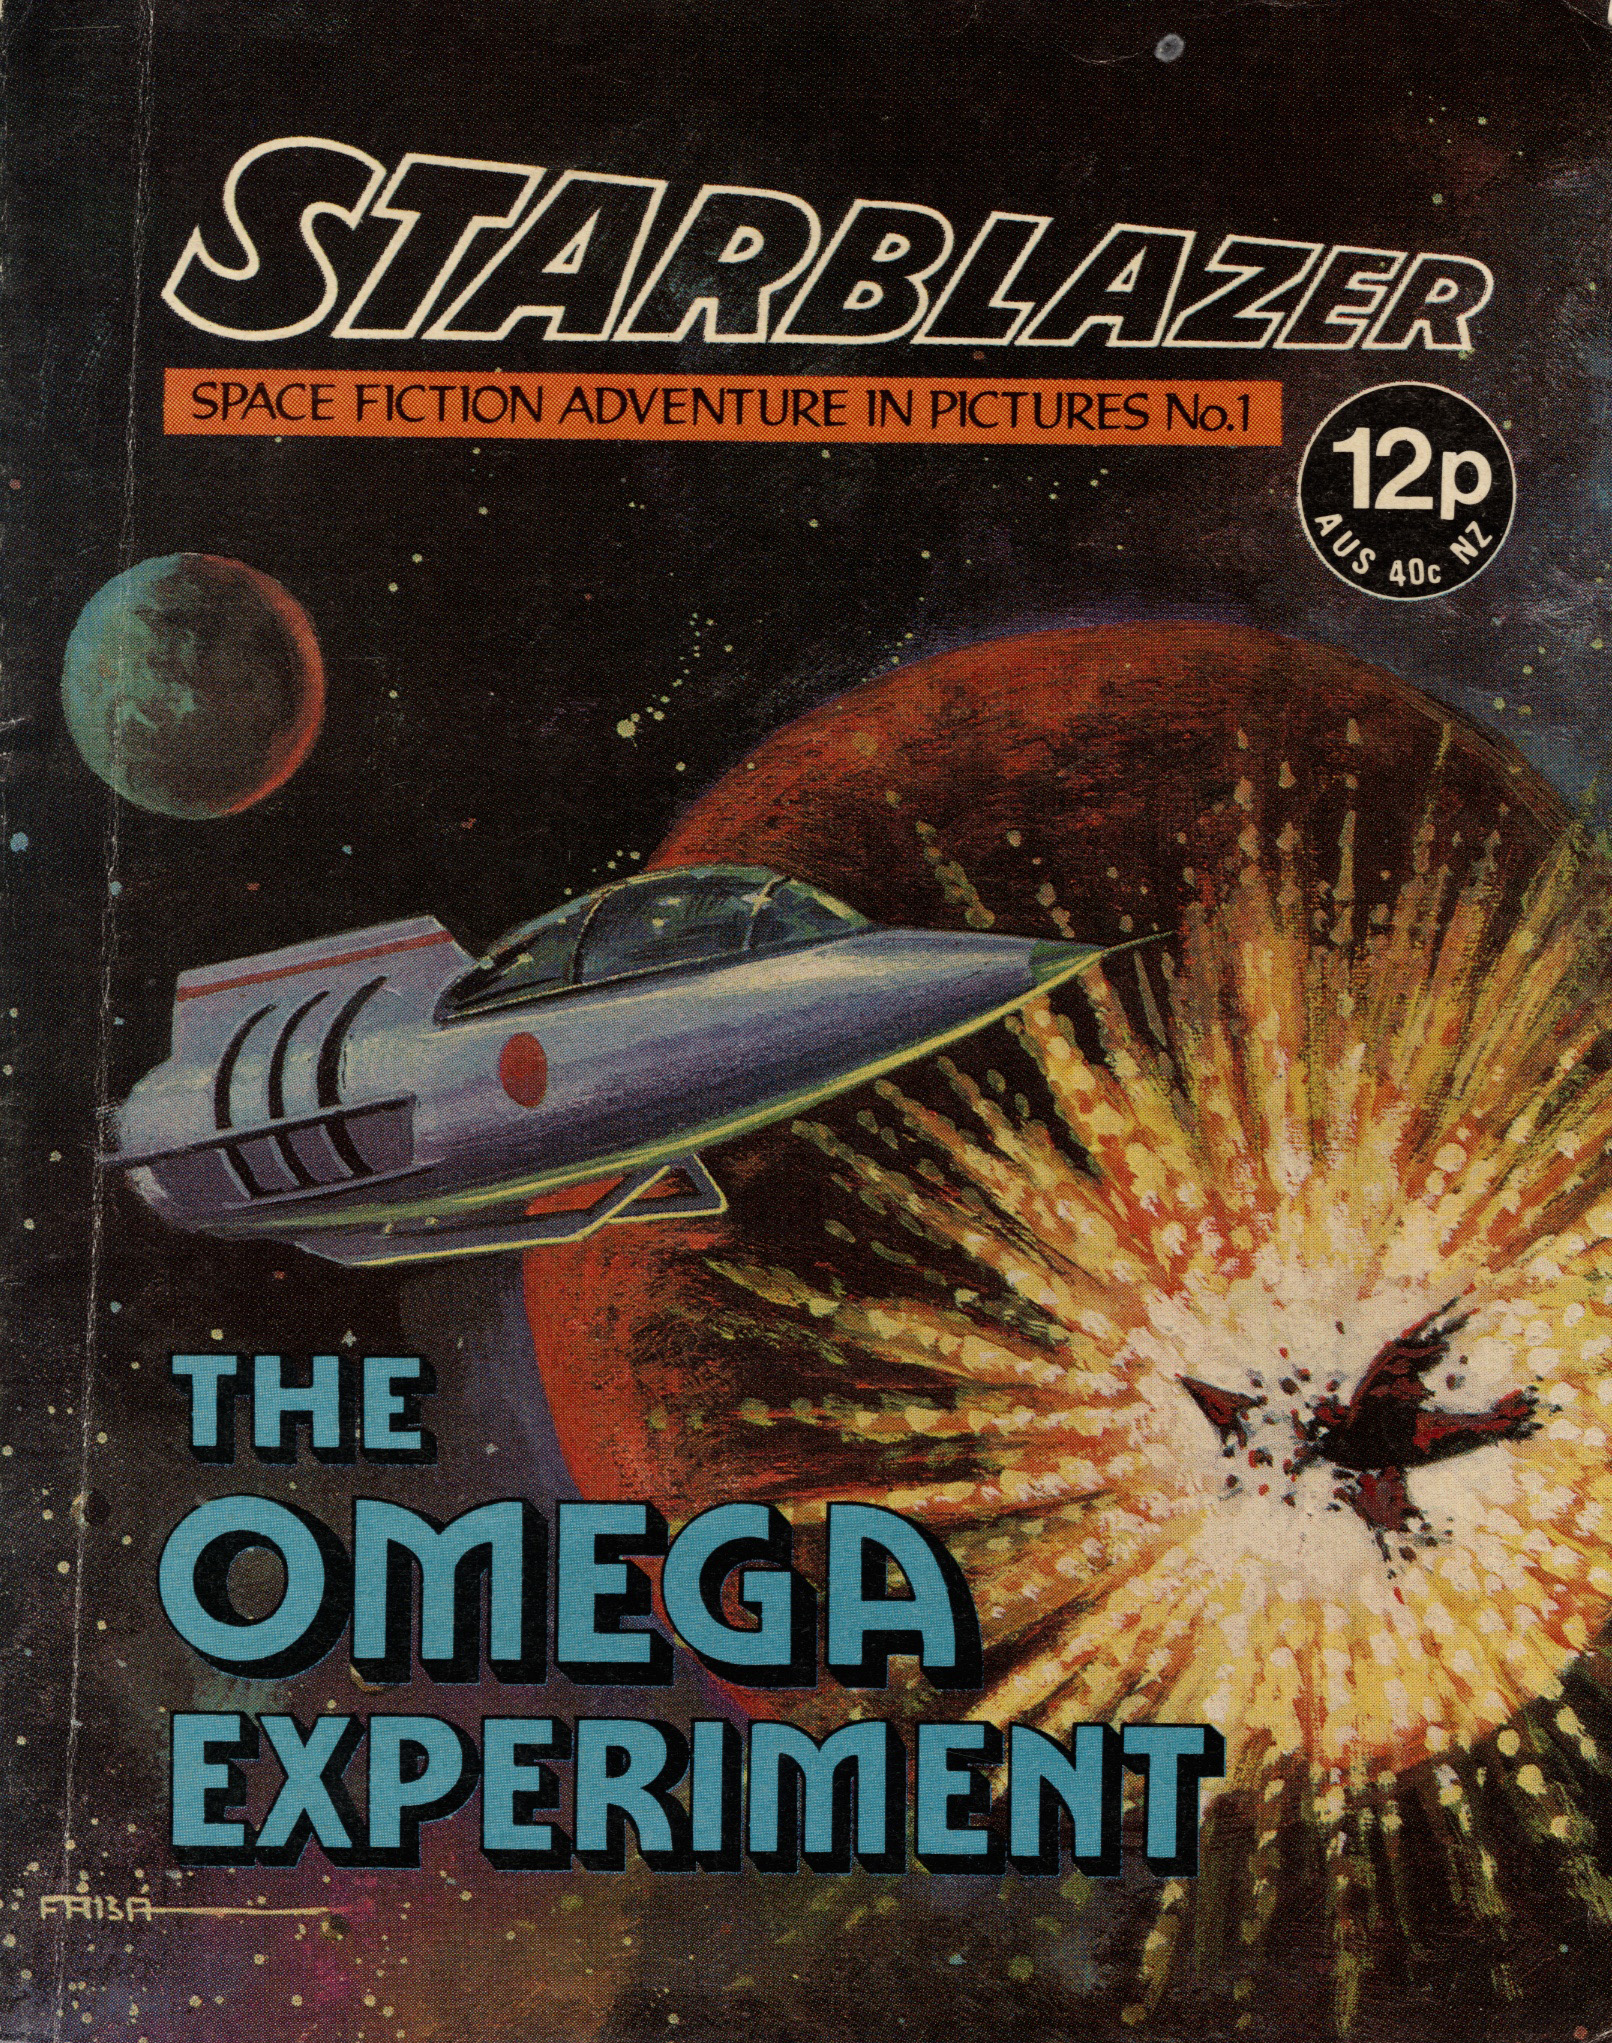 Starblazer Issue 1